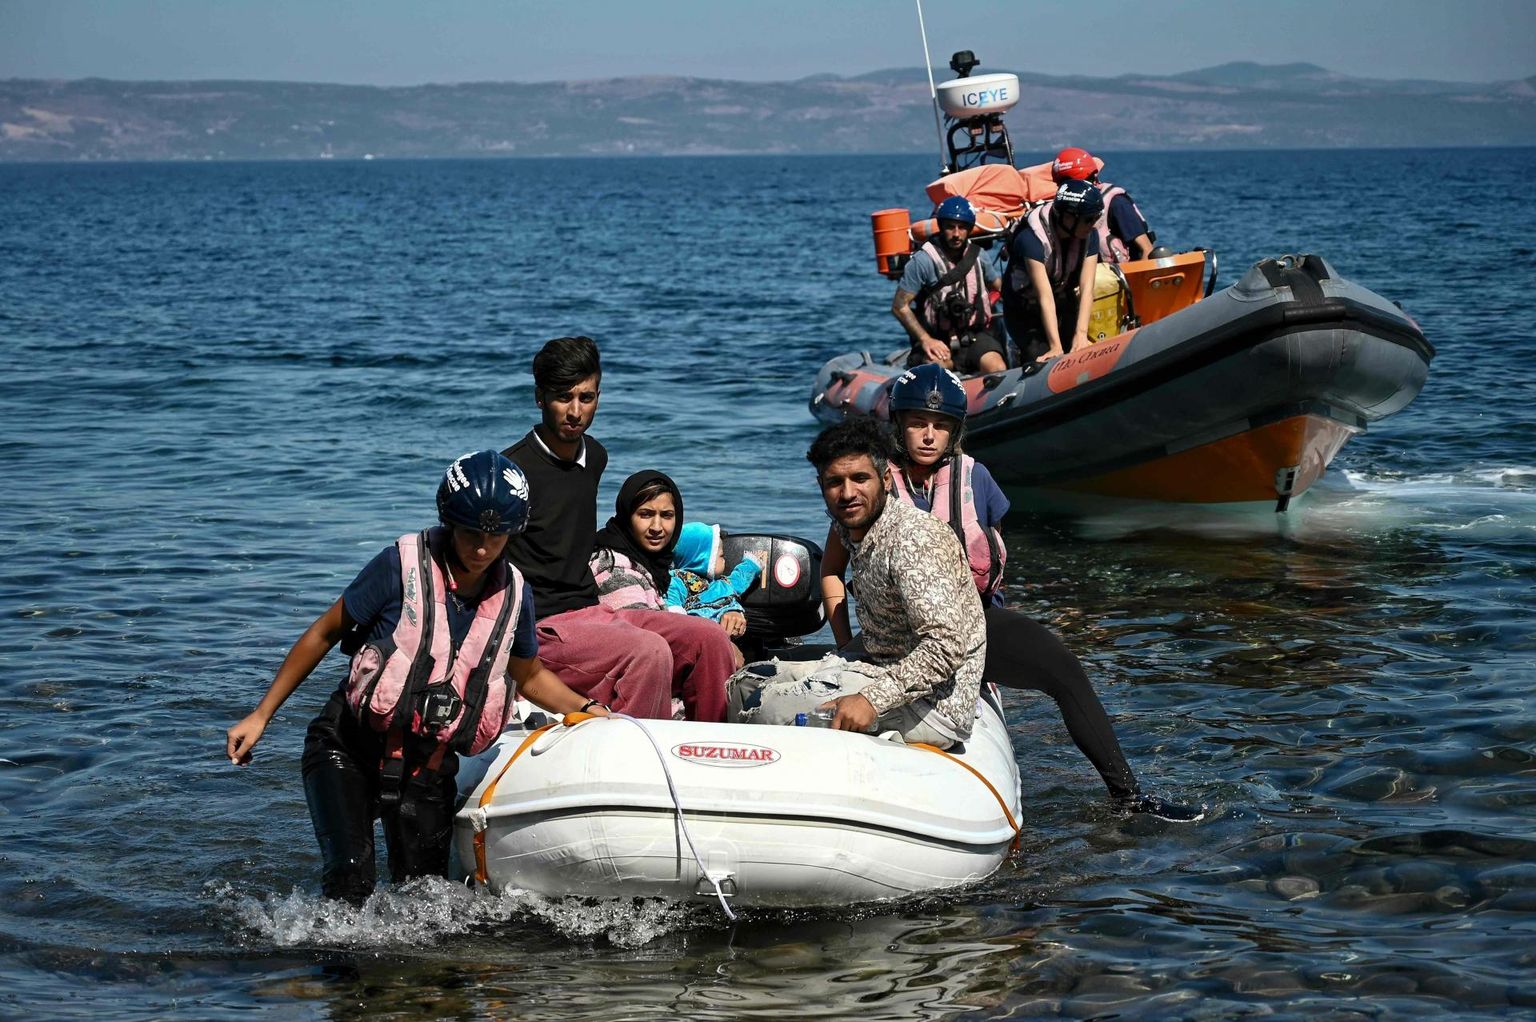 Vince Gaia hoiatab, et kliima soojenemine viib seninägematu rändekriisini, mille kõrval 2015. aastal Euroopat tabanud rändekriis näib lapsemänguna. Fotol merelt päästetud põgenikud Kreekas Lesbose saarel 2019. aastal.